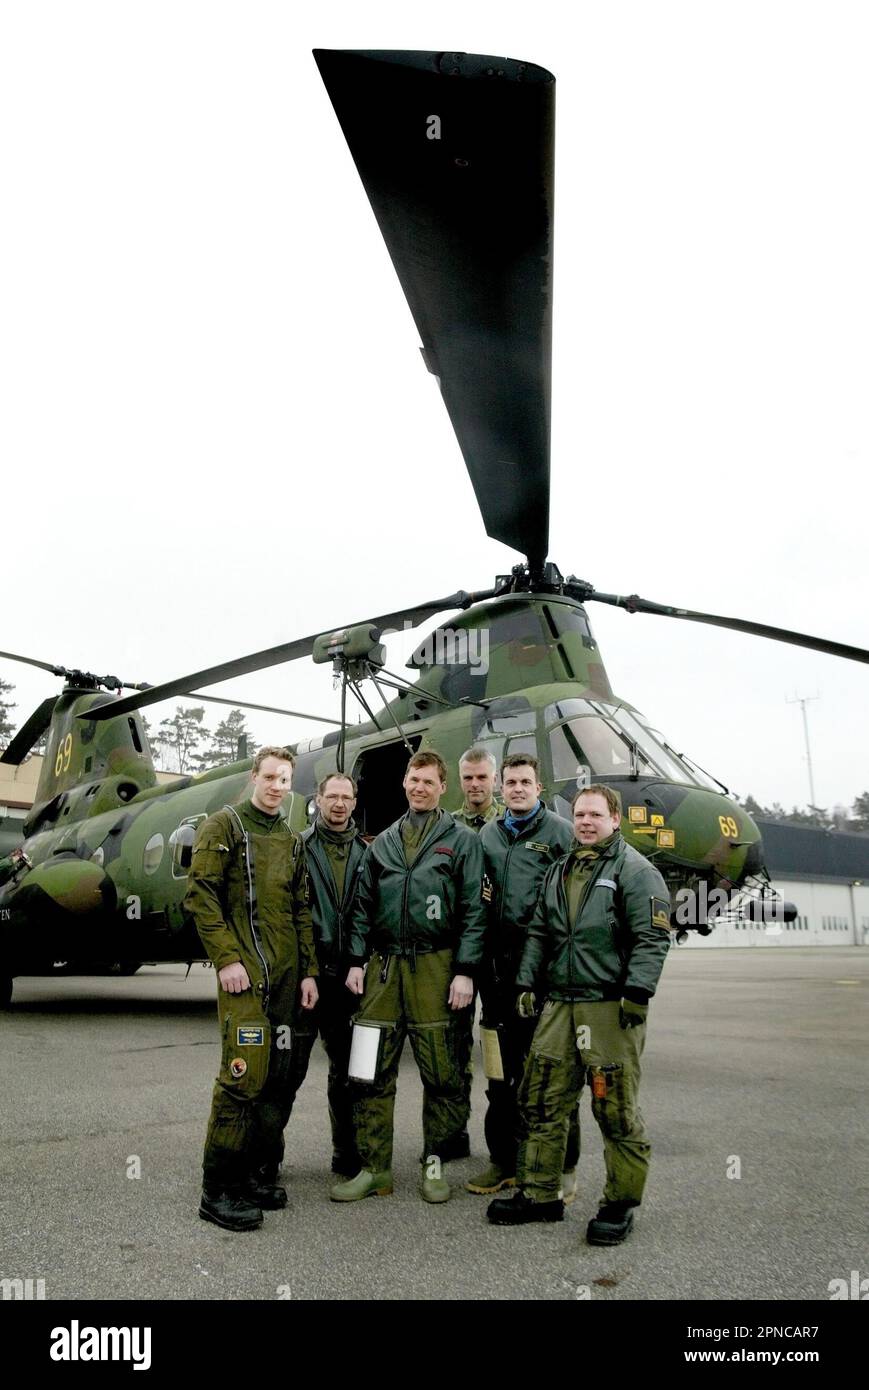 Helikopter 4 der schwedischen Luftwaffe, HKP 4, vom Helikopter-Bataillon, Marinestützpunkt Berga. HKP 4 wurde bei der U-Boot-Jagd und bei Rettungsmissionen wie der Estonia-Katastrophe eingesetzt. Auf dem Bild: Die Hubschraubercrew vor dem Hubschrauber. Stockfoto